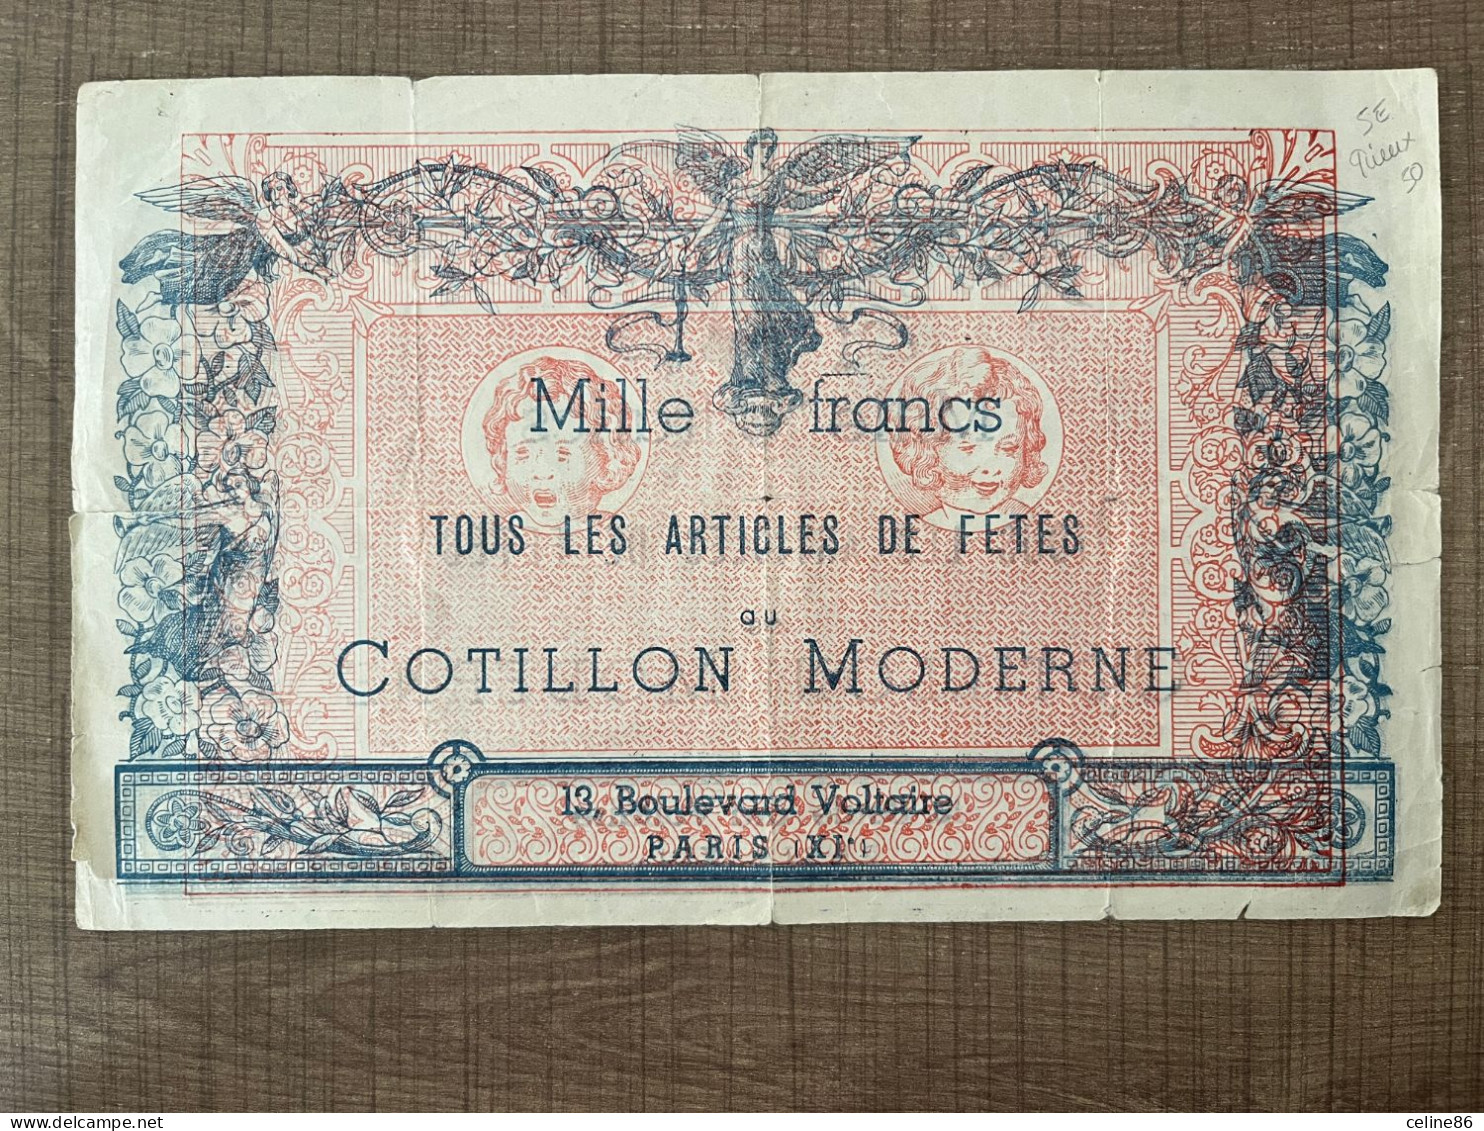 Mille Francs Tous Les Articles De Fetes Cotillon Moderne - Publicités